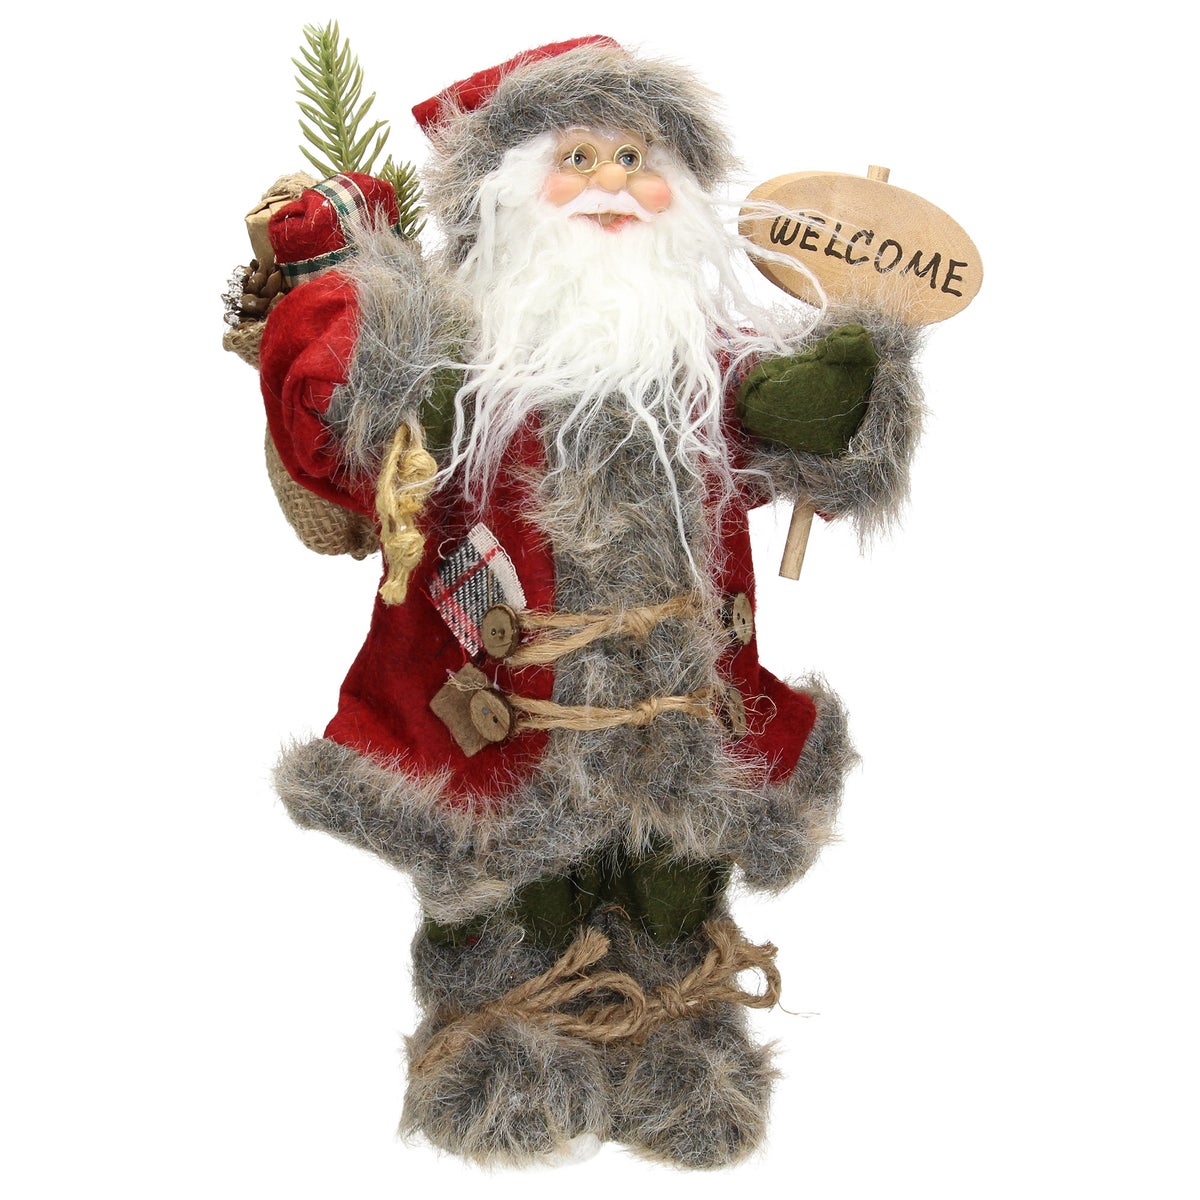 ECD Germany Weihnachtsmann Deko-Figur, 37 cm hoch, rot/grauer Mantel, grüner Hose, mit Geschenkesack, Santa-Claus Figur Winterdeko Weihnachten Stehende Figur Winter Dekoration Nikolaus Weihnachtsdeko